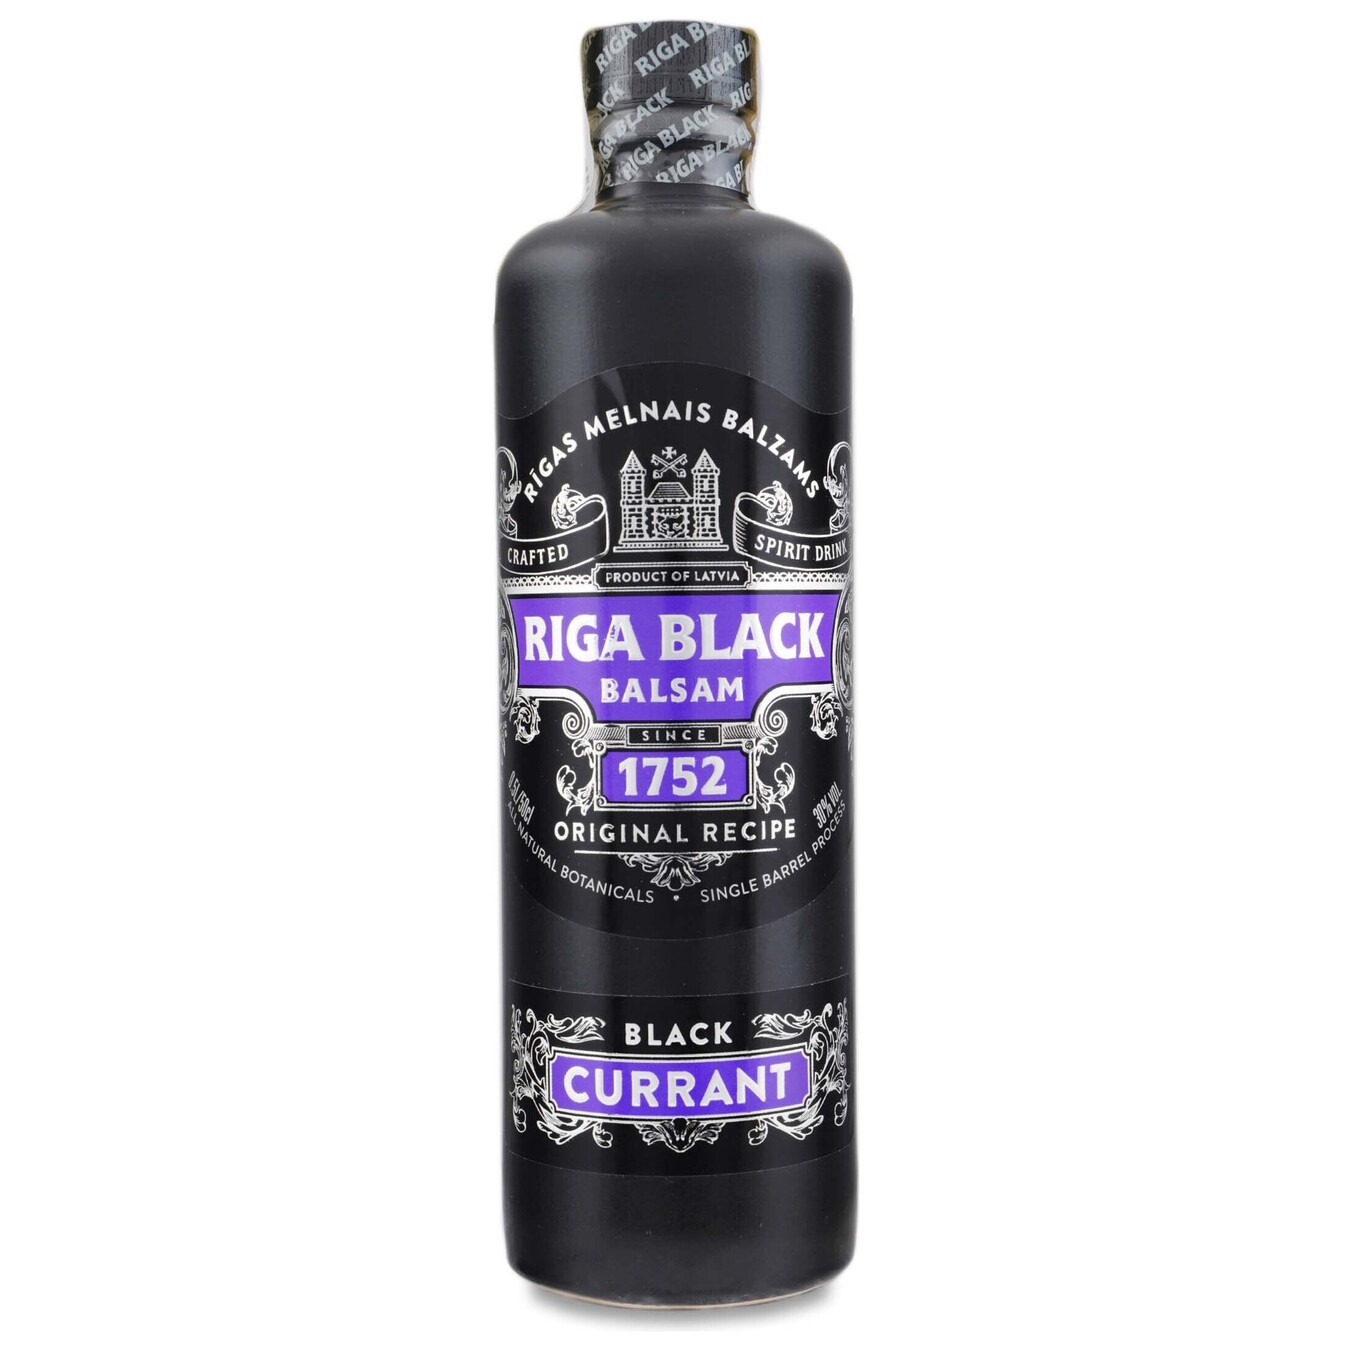 Balsam Riga Black Black currant 30% 0.5 l